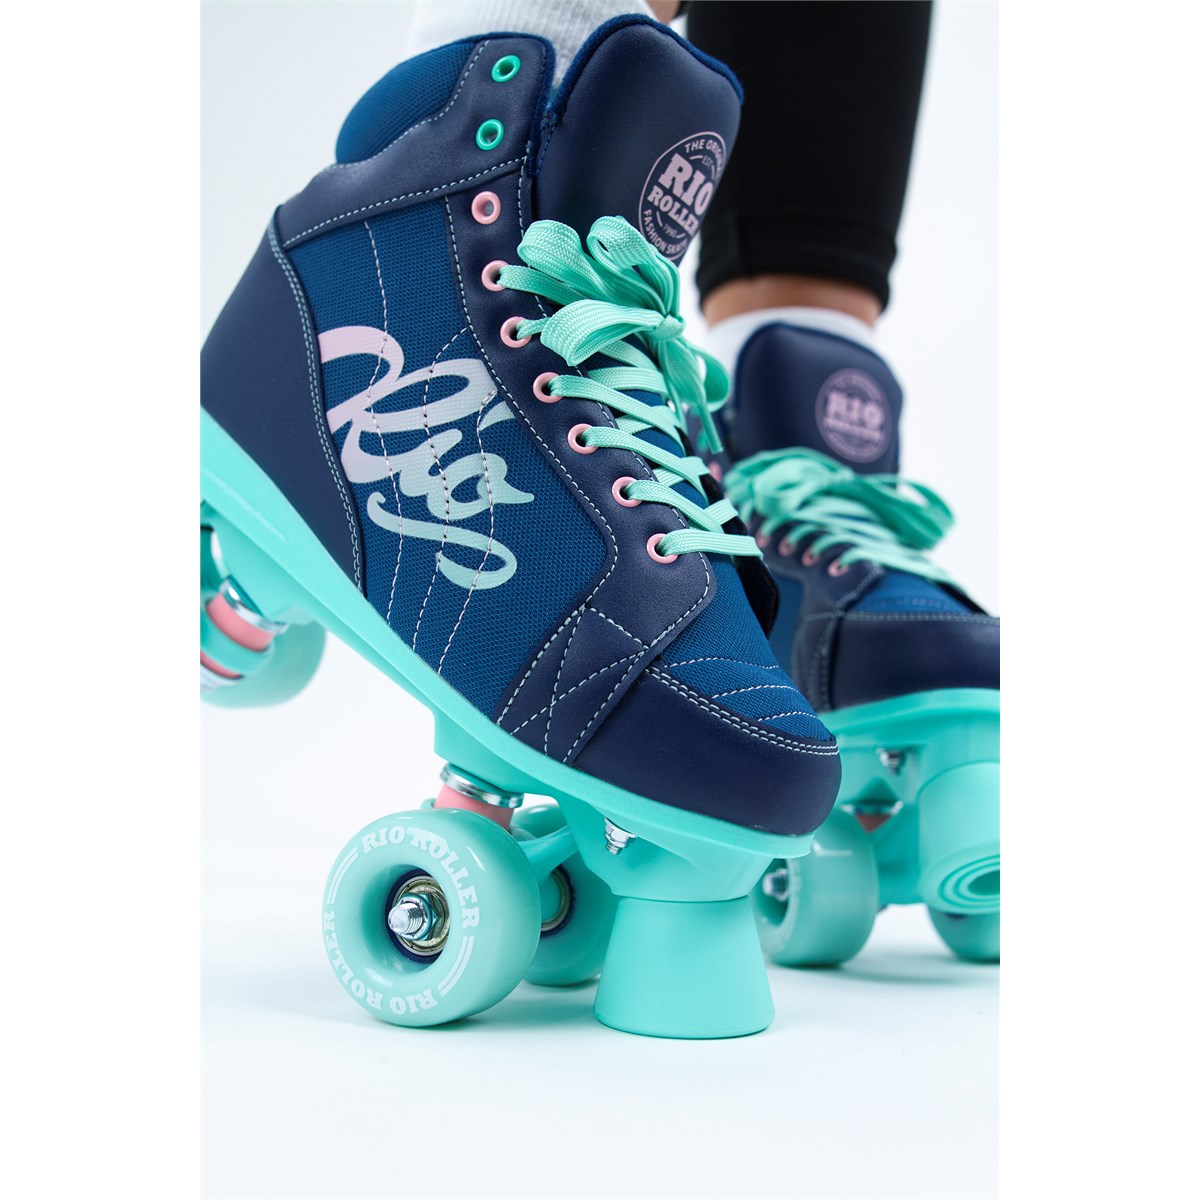 Rio Roller Lumina Quad Skates Navy/Green